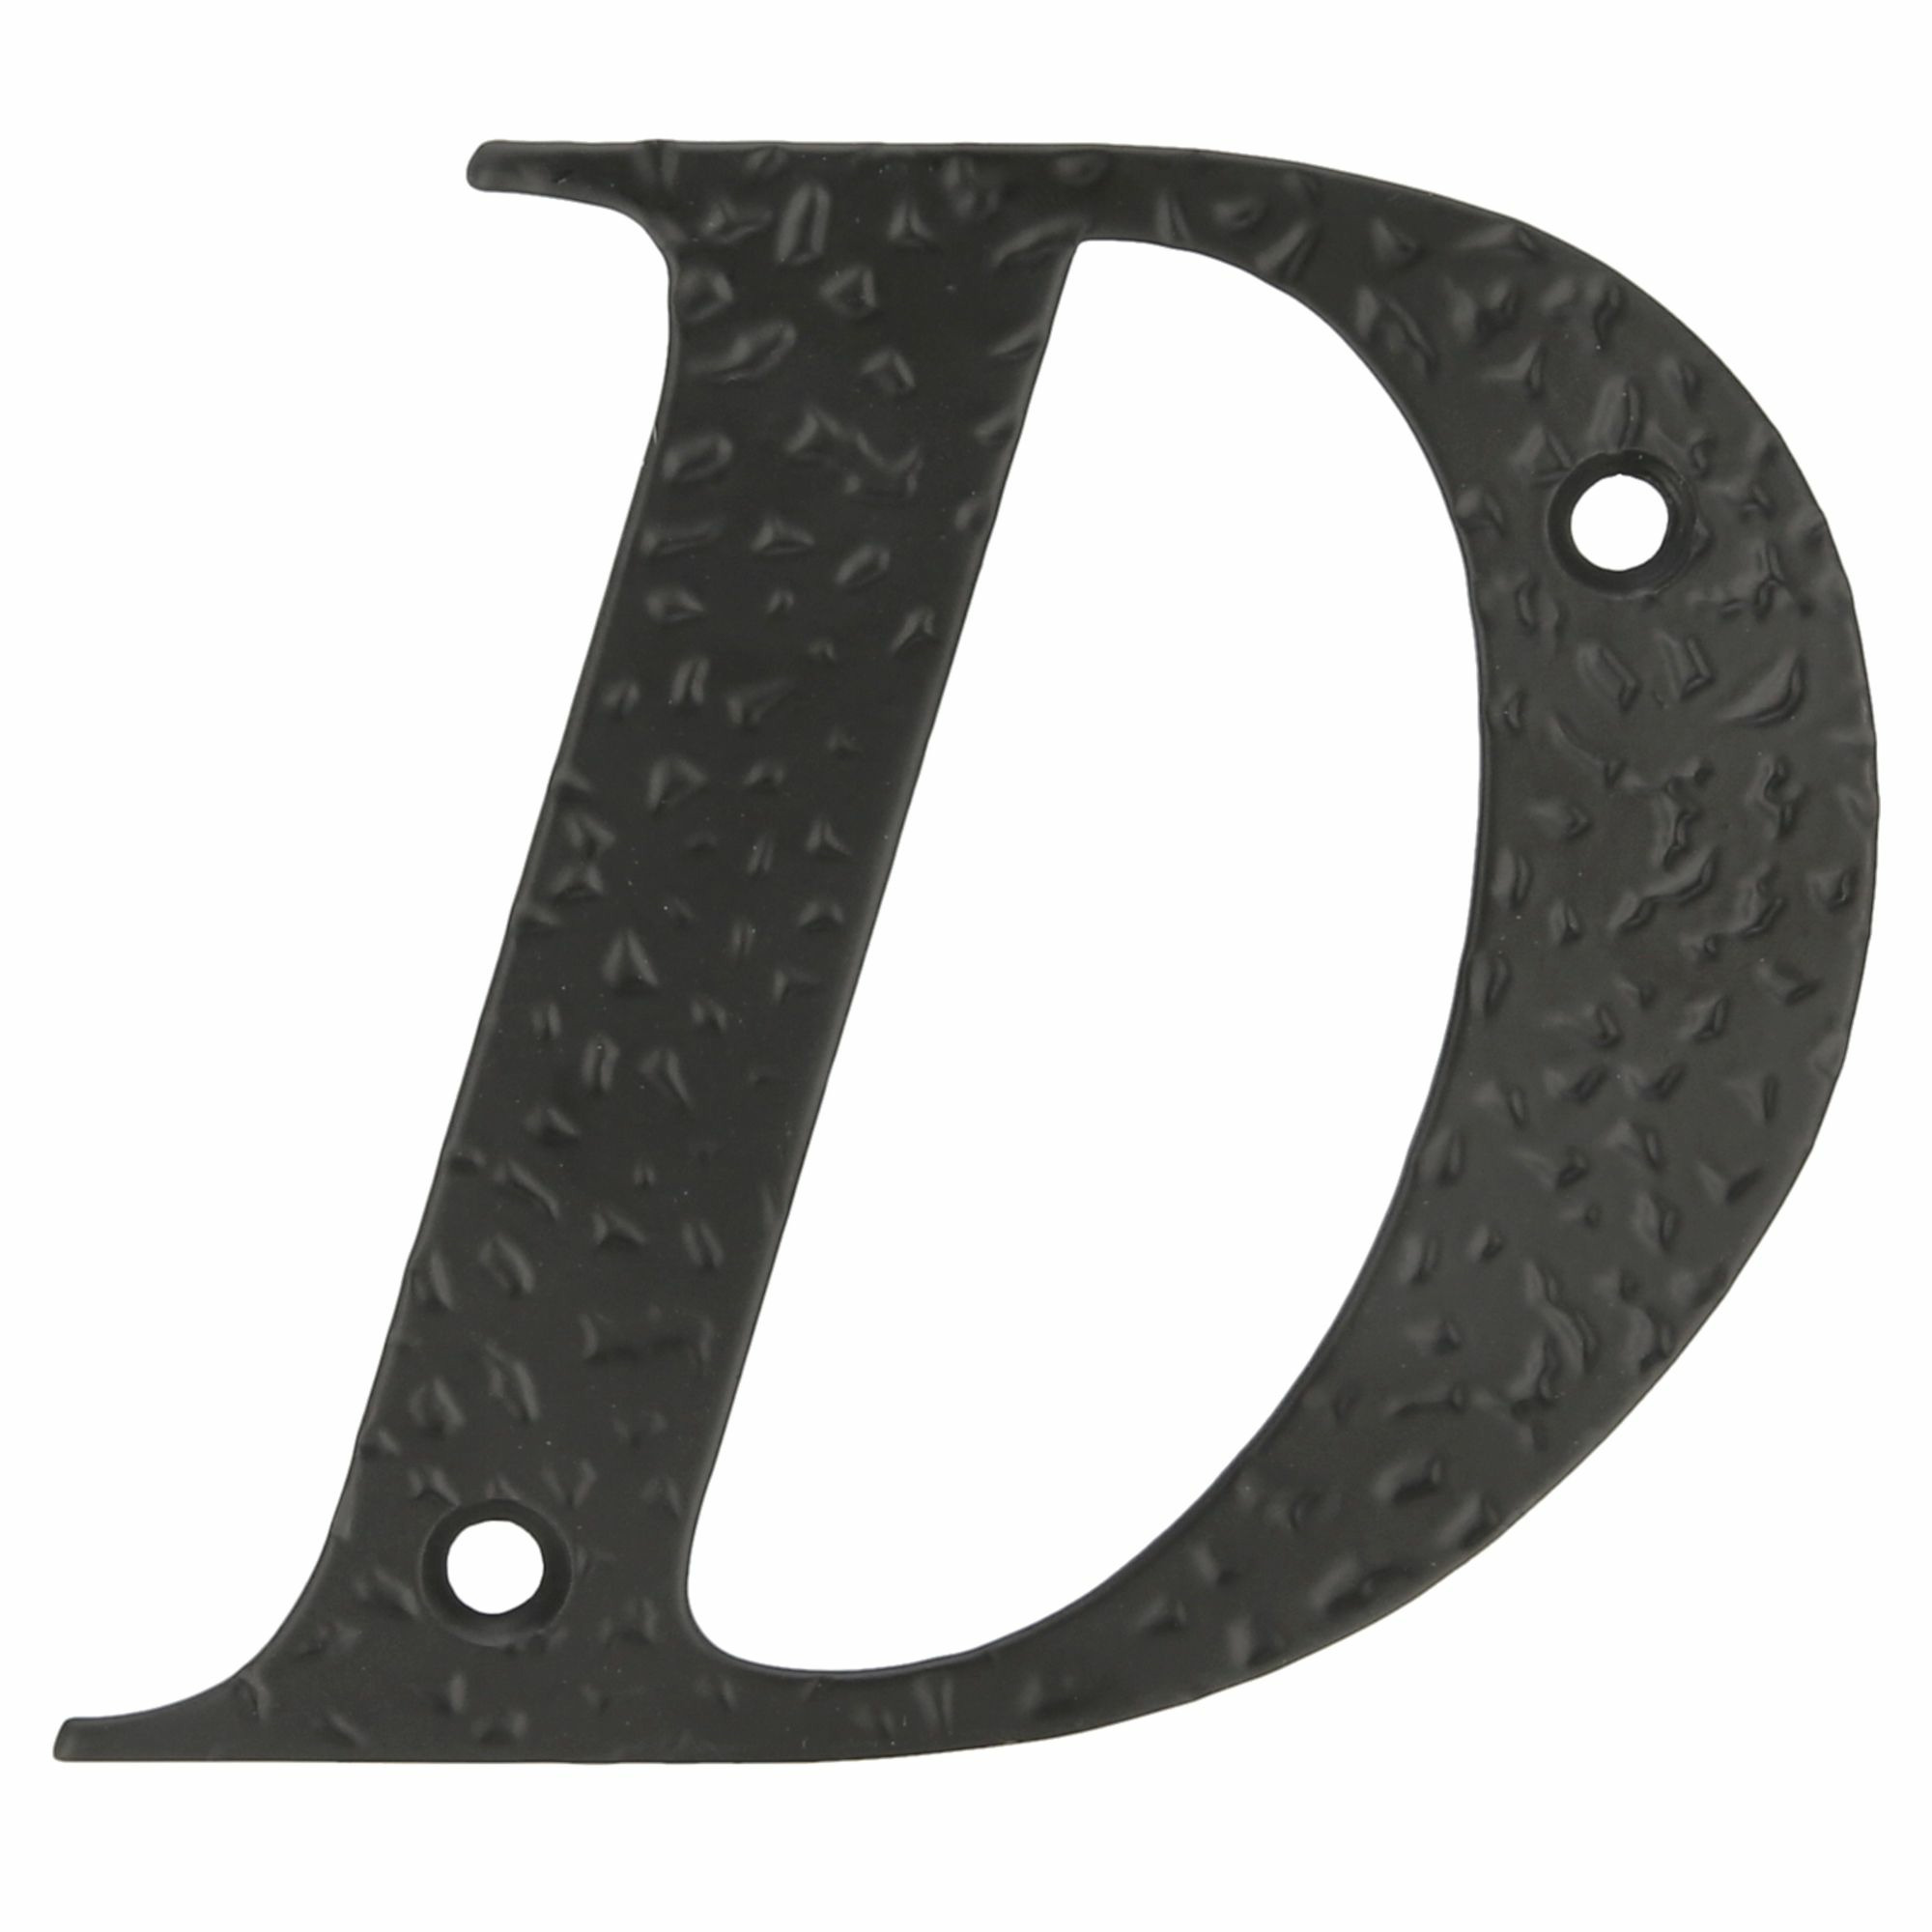 AMIG Huisnummer/letter D - massief gesmeed staal - 10cm - incl. bijpassende schroeven - zwart